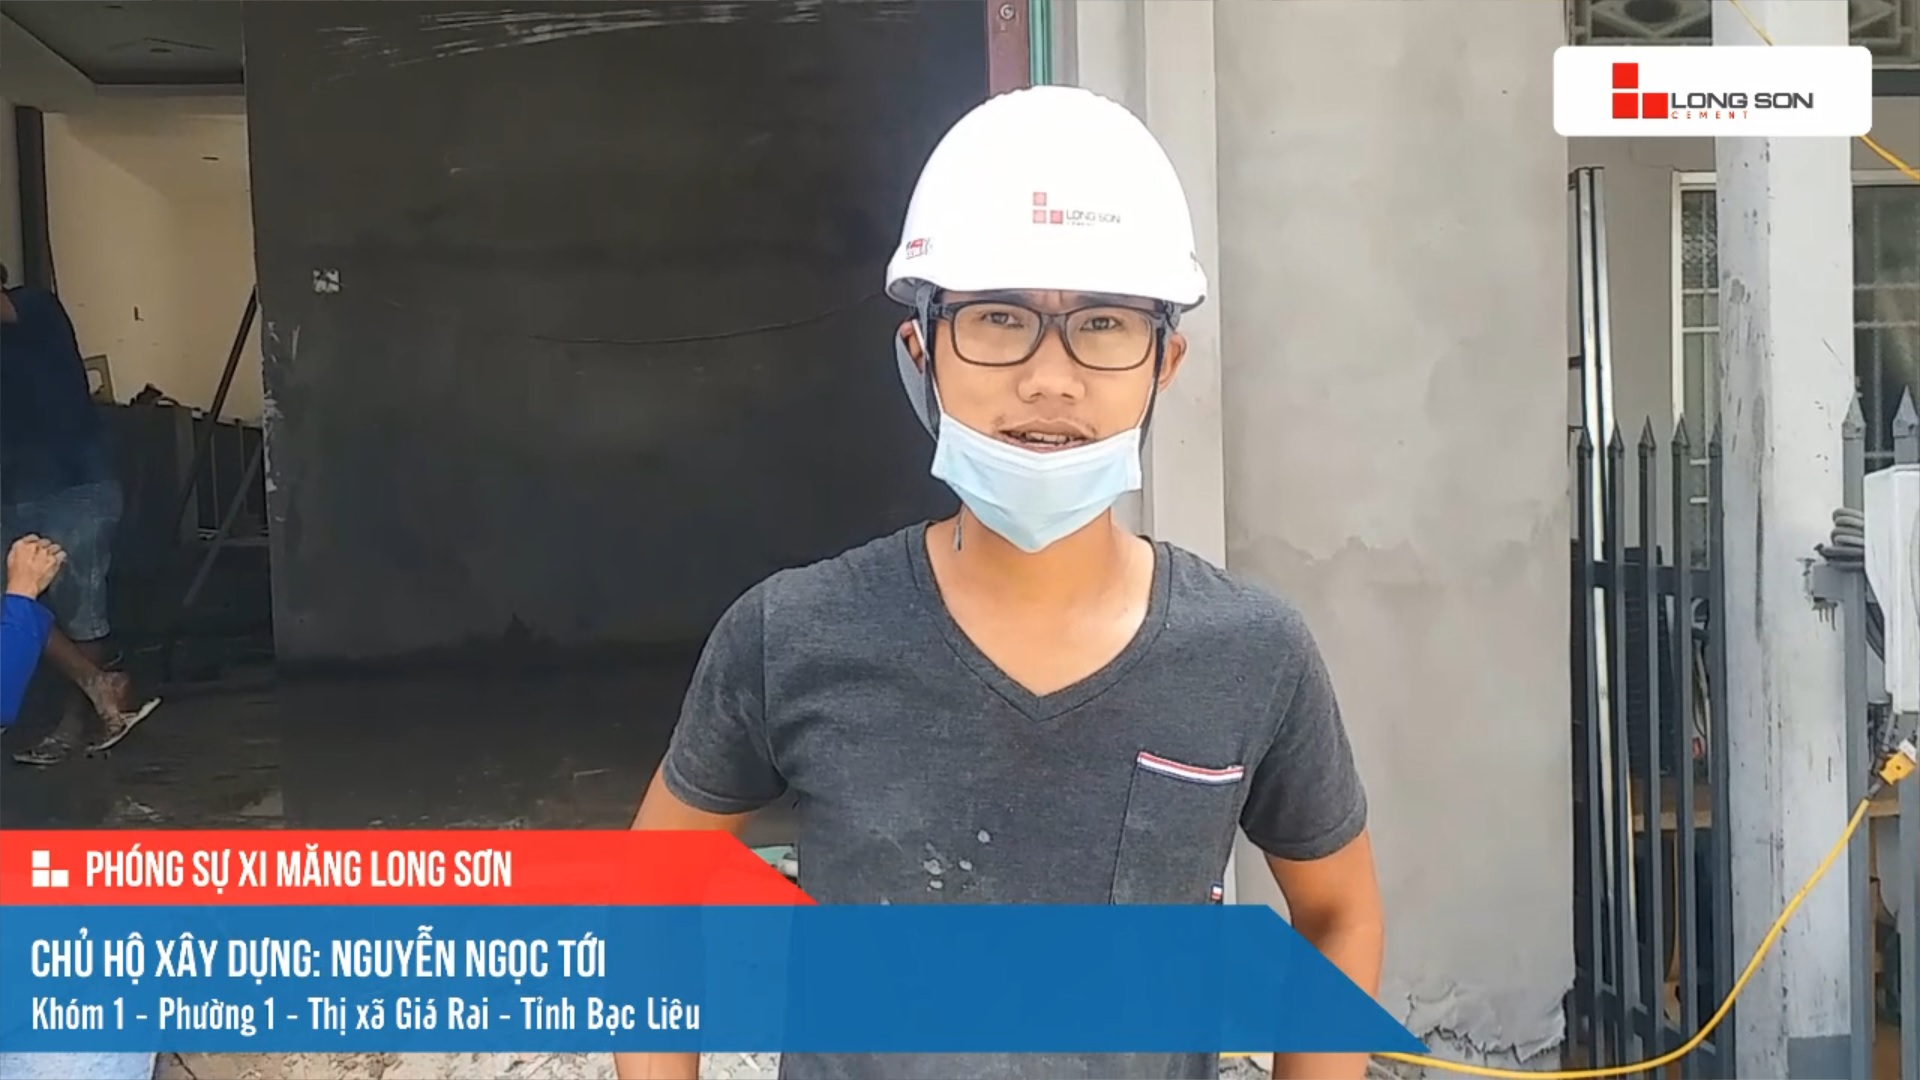 Phóng sự công trình sử dụng Xi măng Long Sơn tại Bạc Liêu 17.04.2021